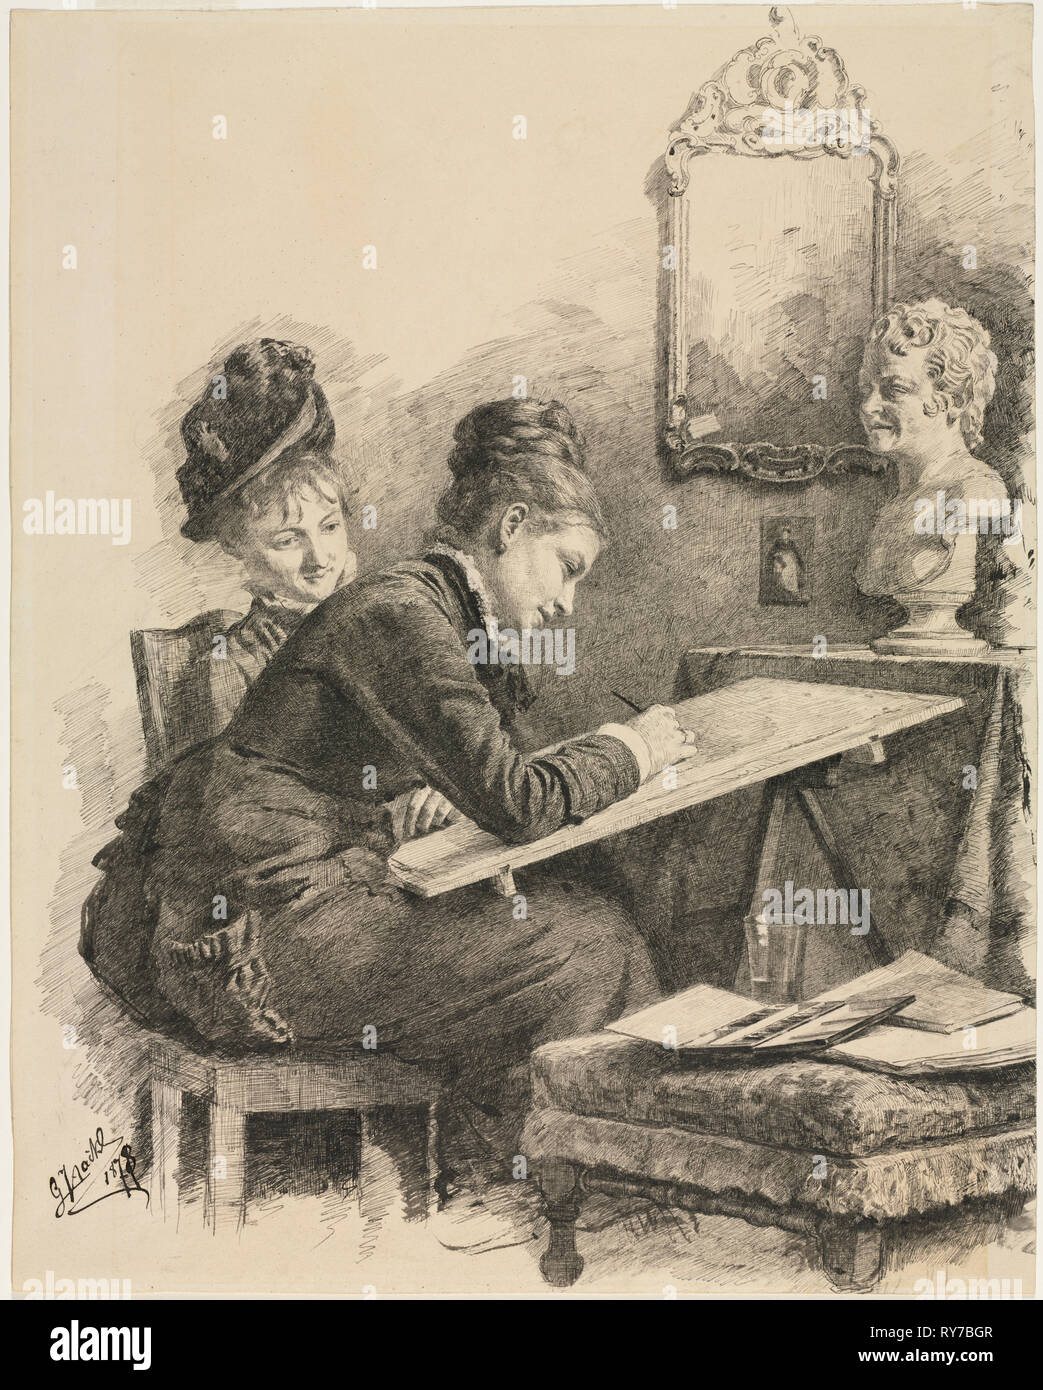 Deux femmes l'ébauche d'une sculpture, 1878. Gabriel von Hackl (allemand, 1843-1926). Plume et encre noire Banque D'Images